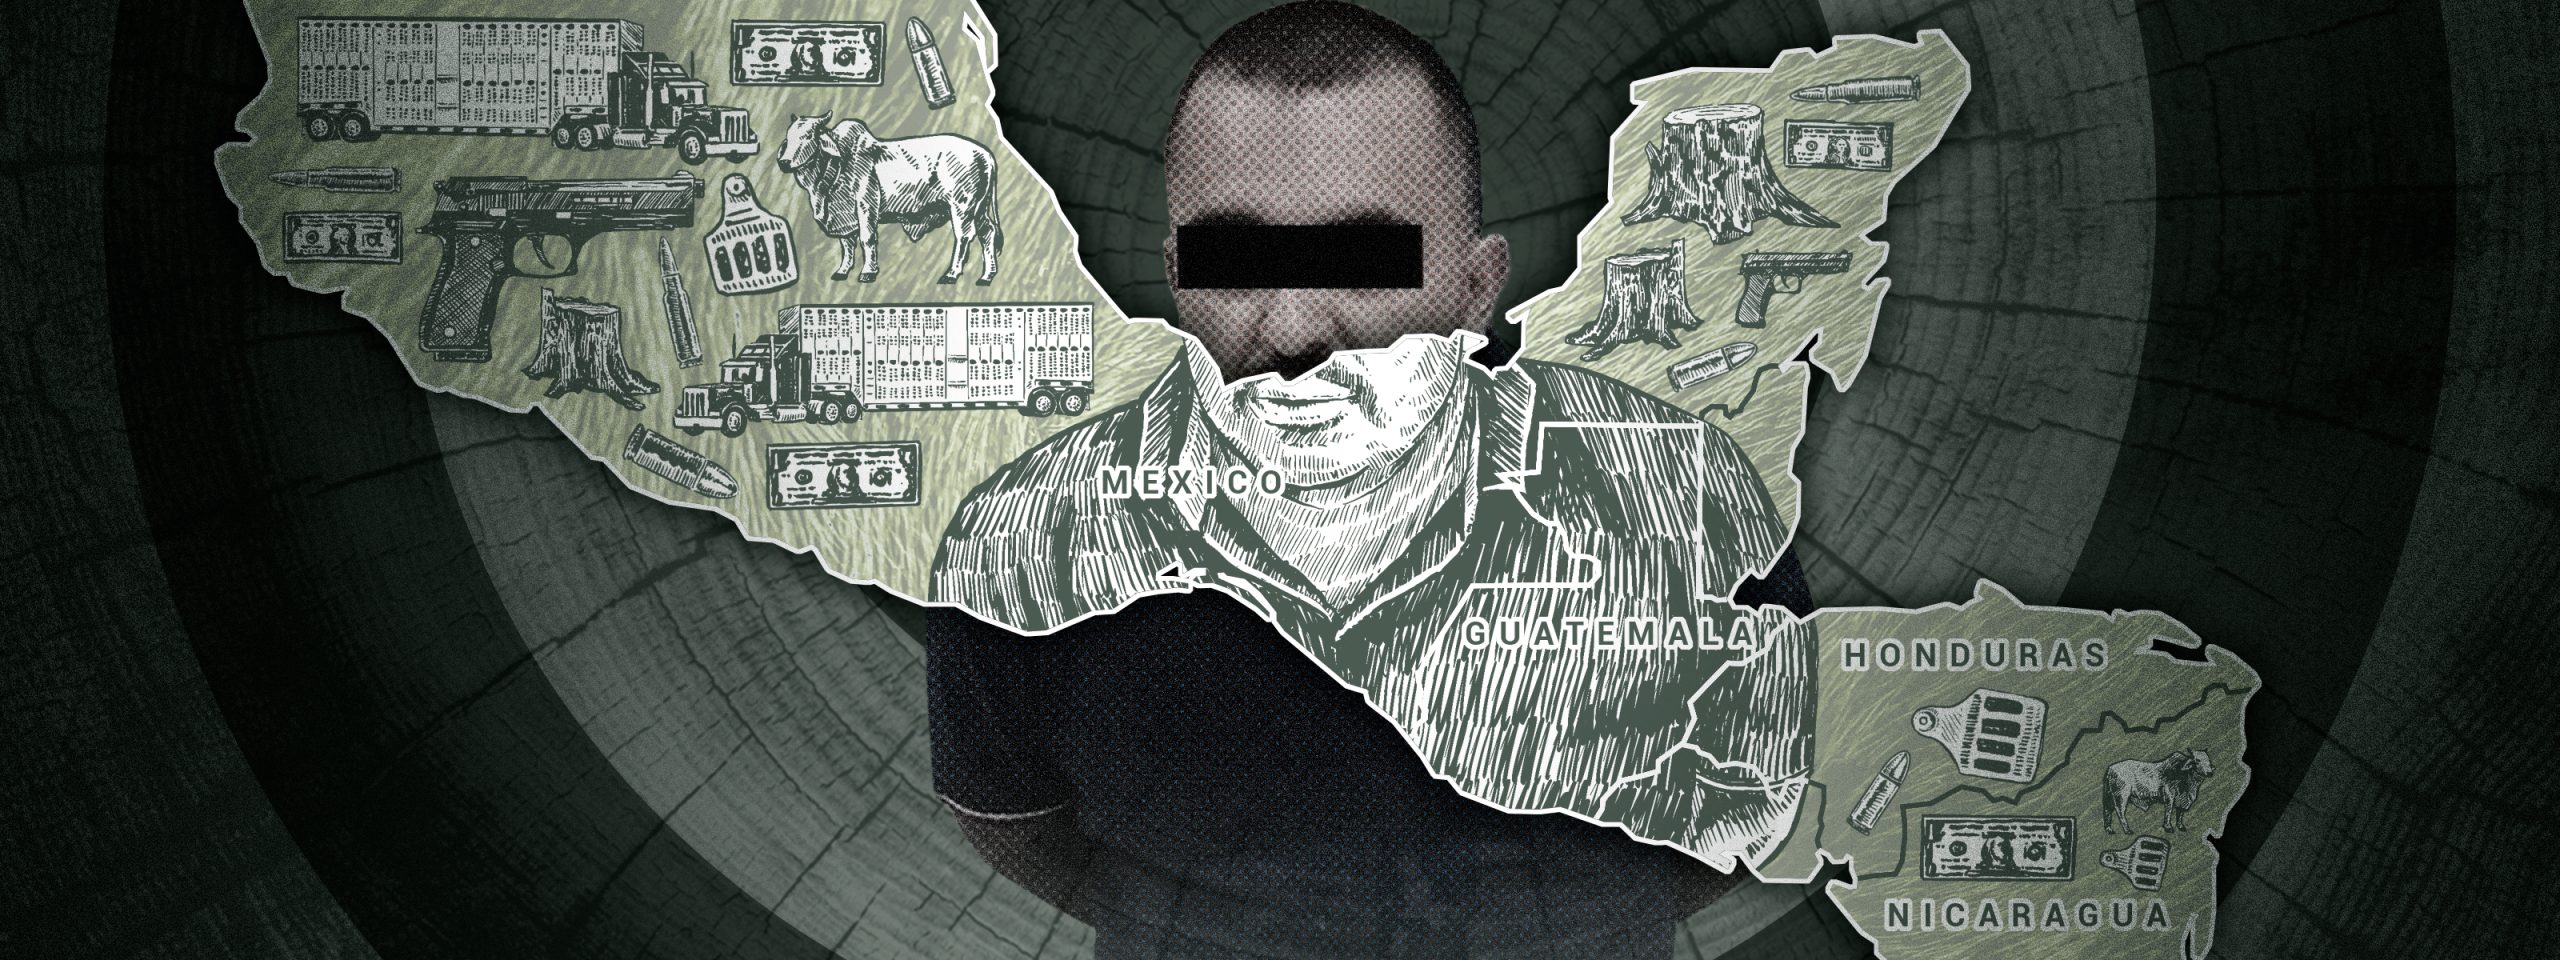 Ilustración mapa de Centroamérica con imágenes de ganado y un preso de fondo